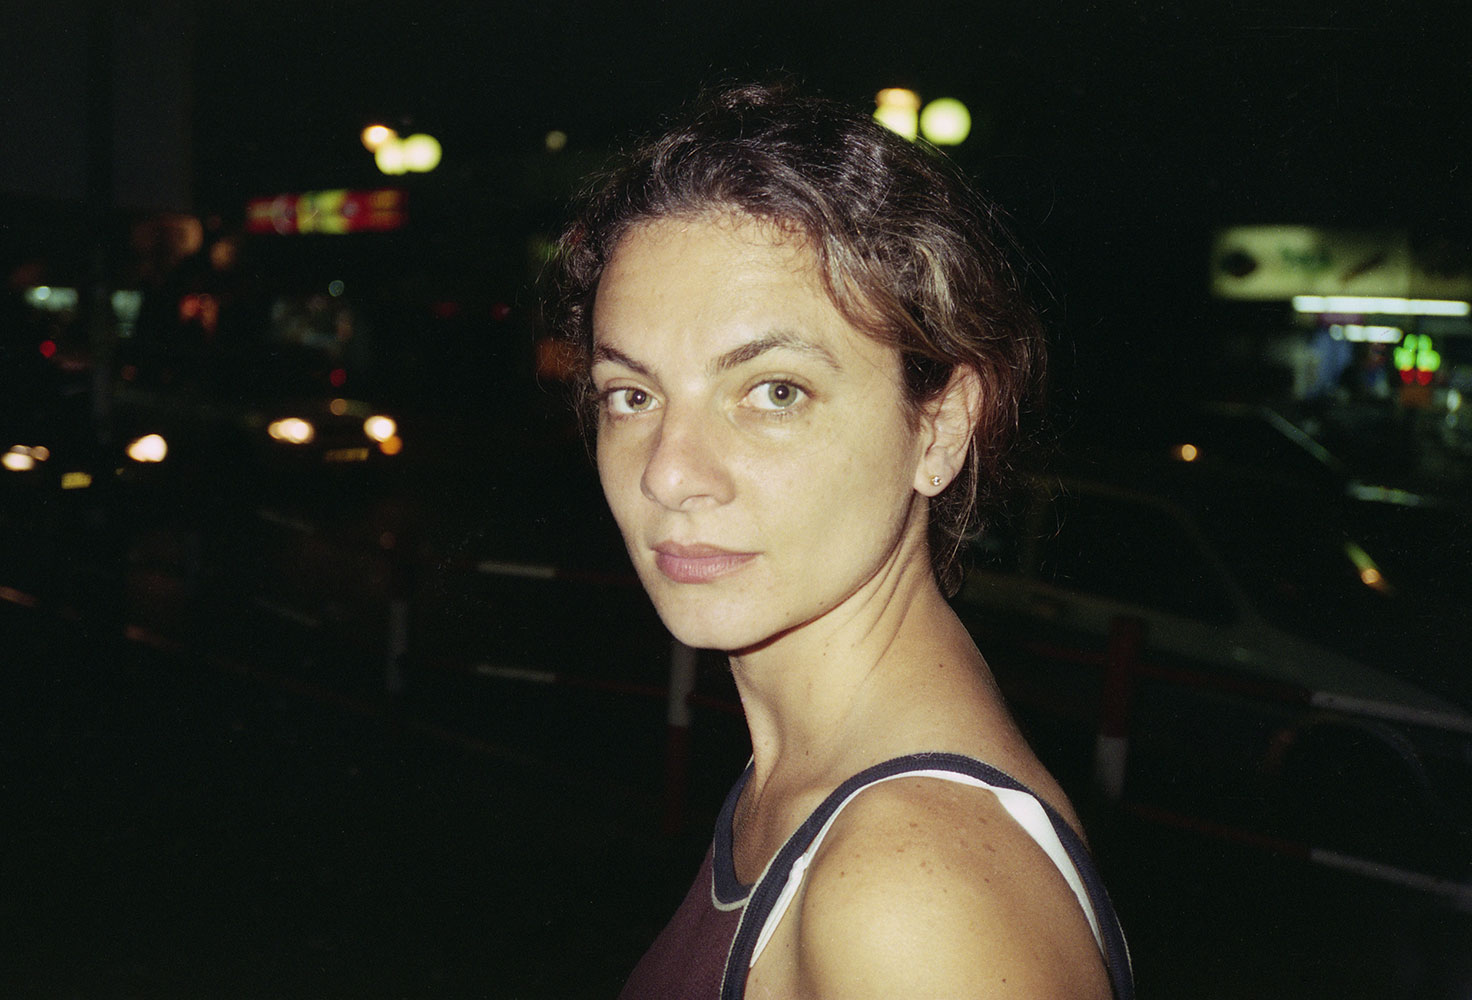 Sonia, 1998